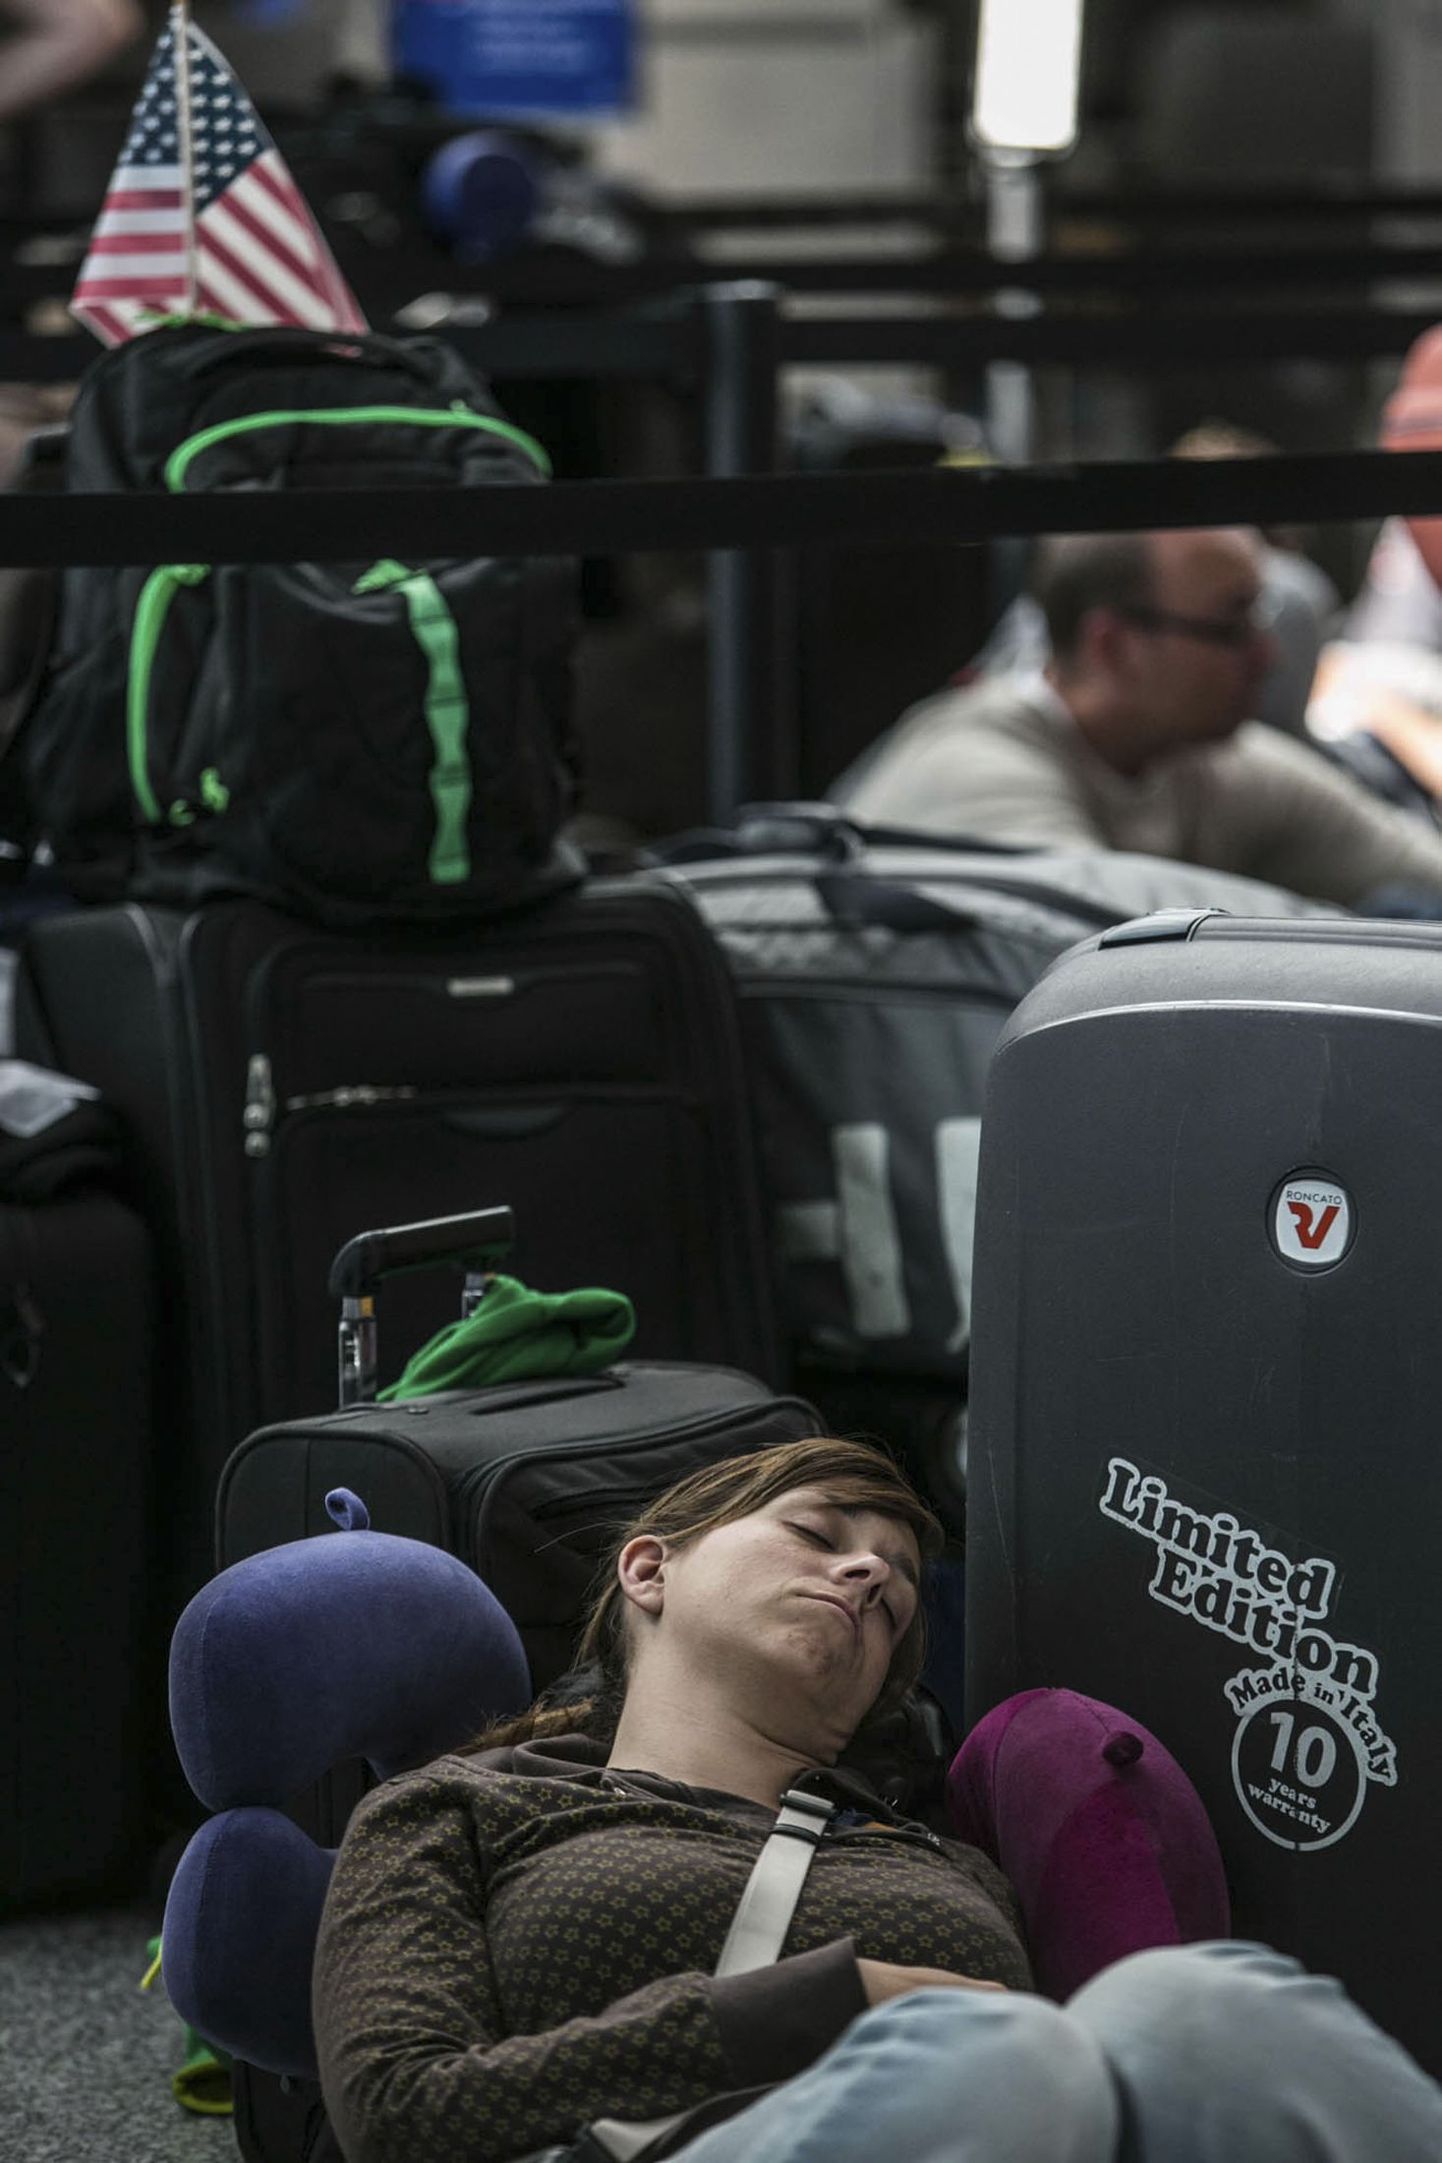 Lennujaamas pole soovitav magada, sest nii on pikanäpumeestel hõlbus magaja vara puistada. Lisaks on oht lennust maha jääda.